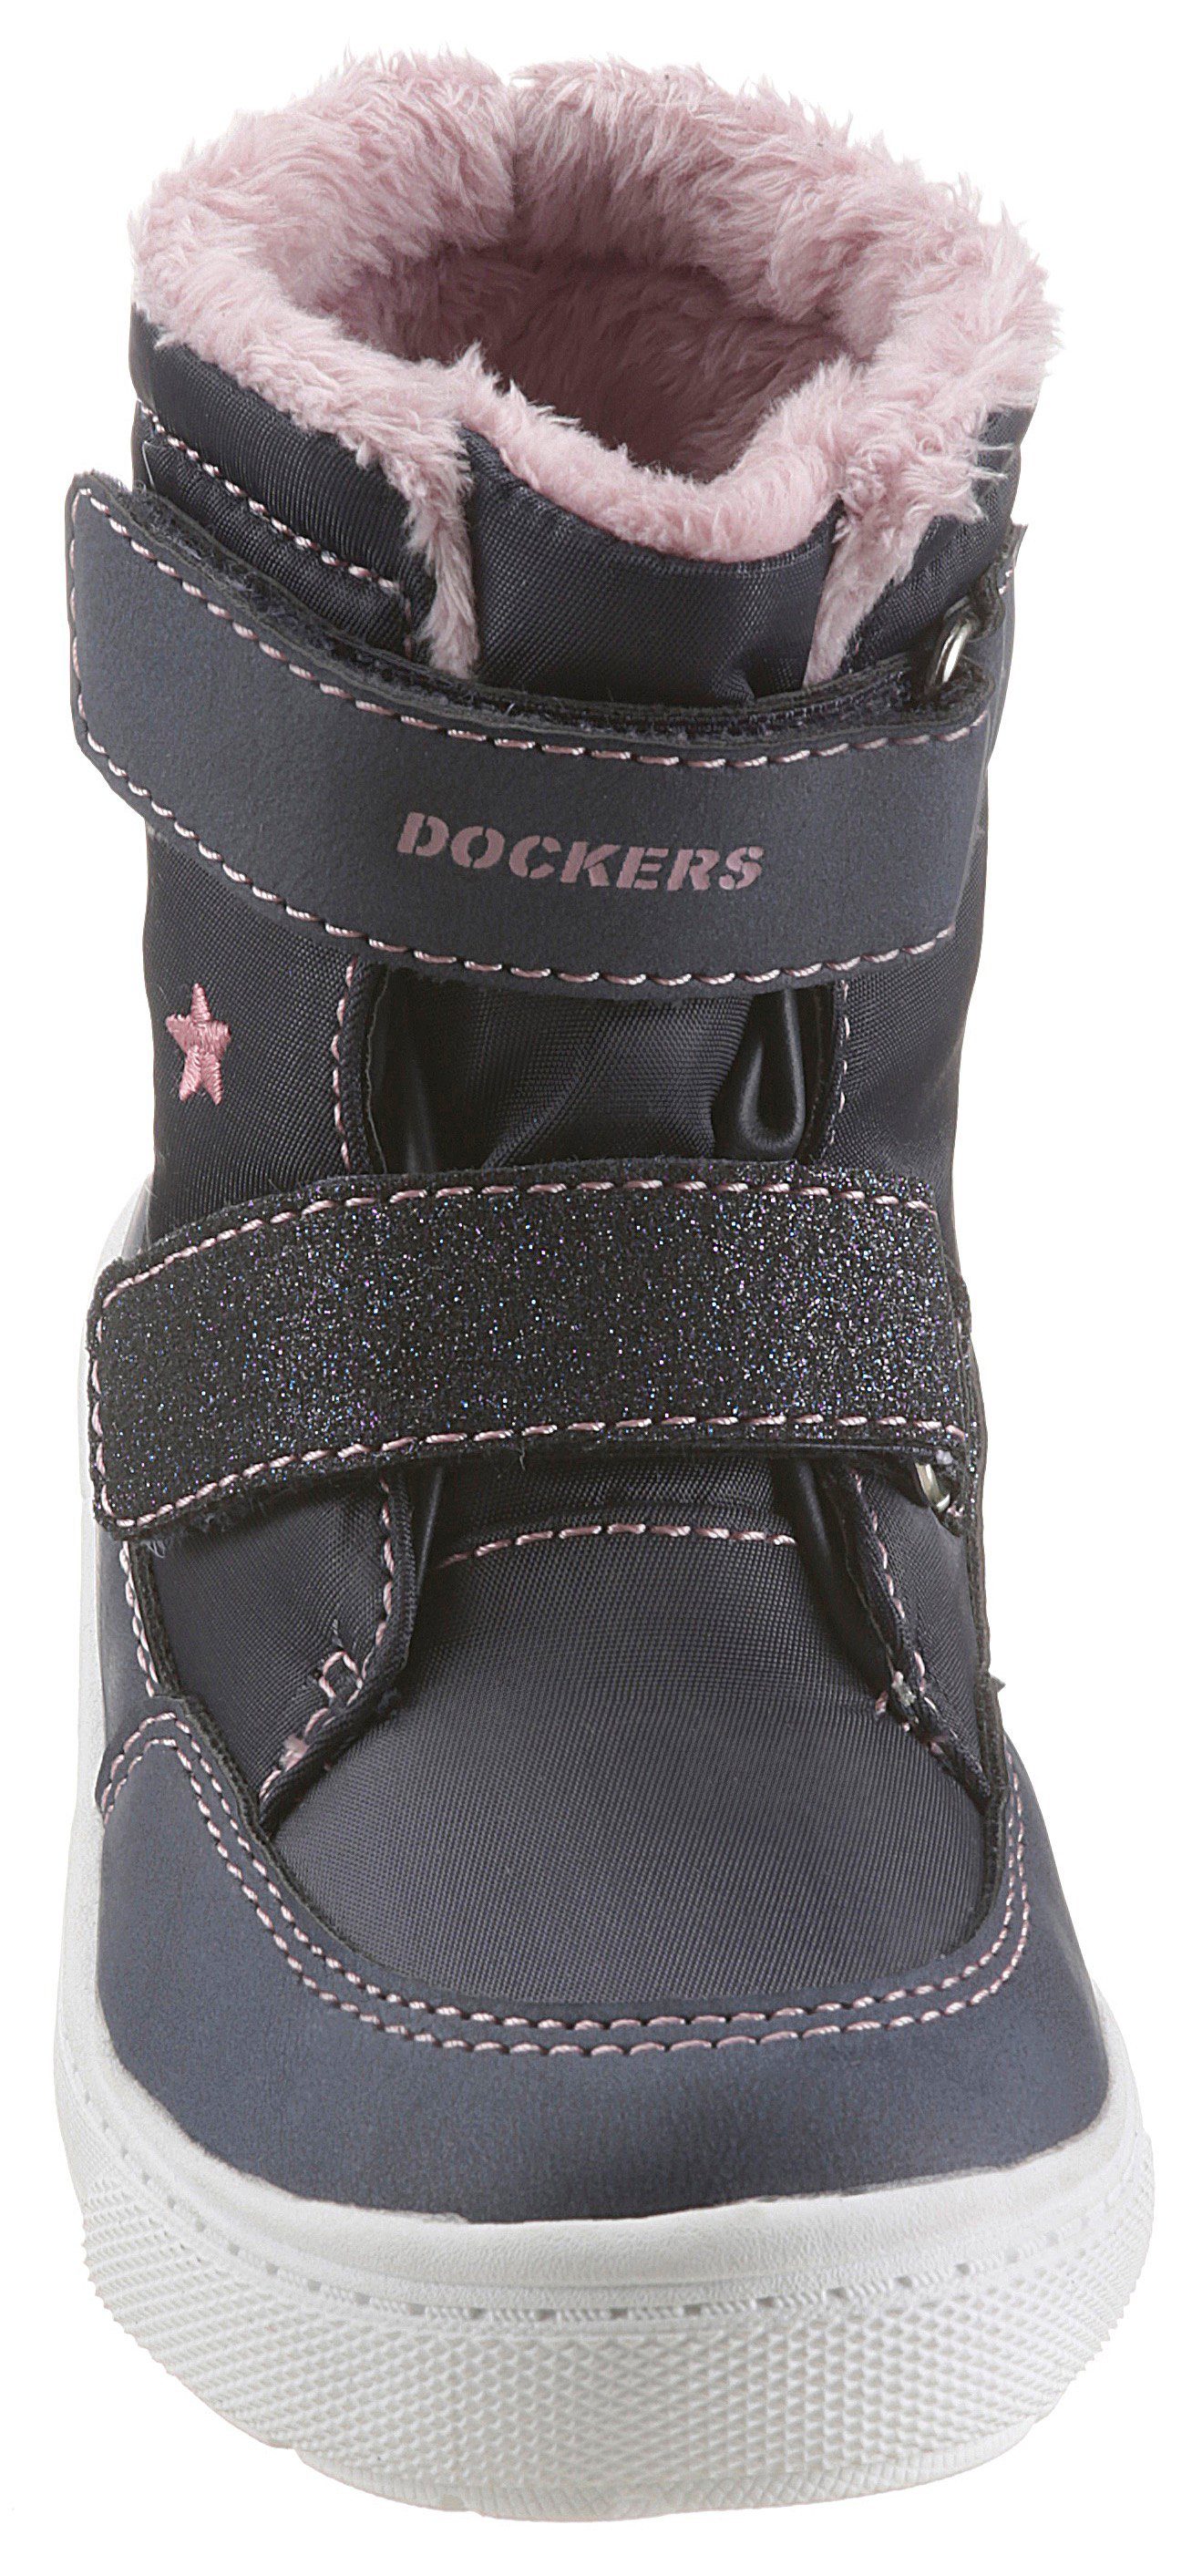 Dock-TEX Einhorn-Stickerei, navy-rosa mit Gerli Dockers by Winterboots